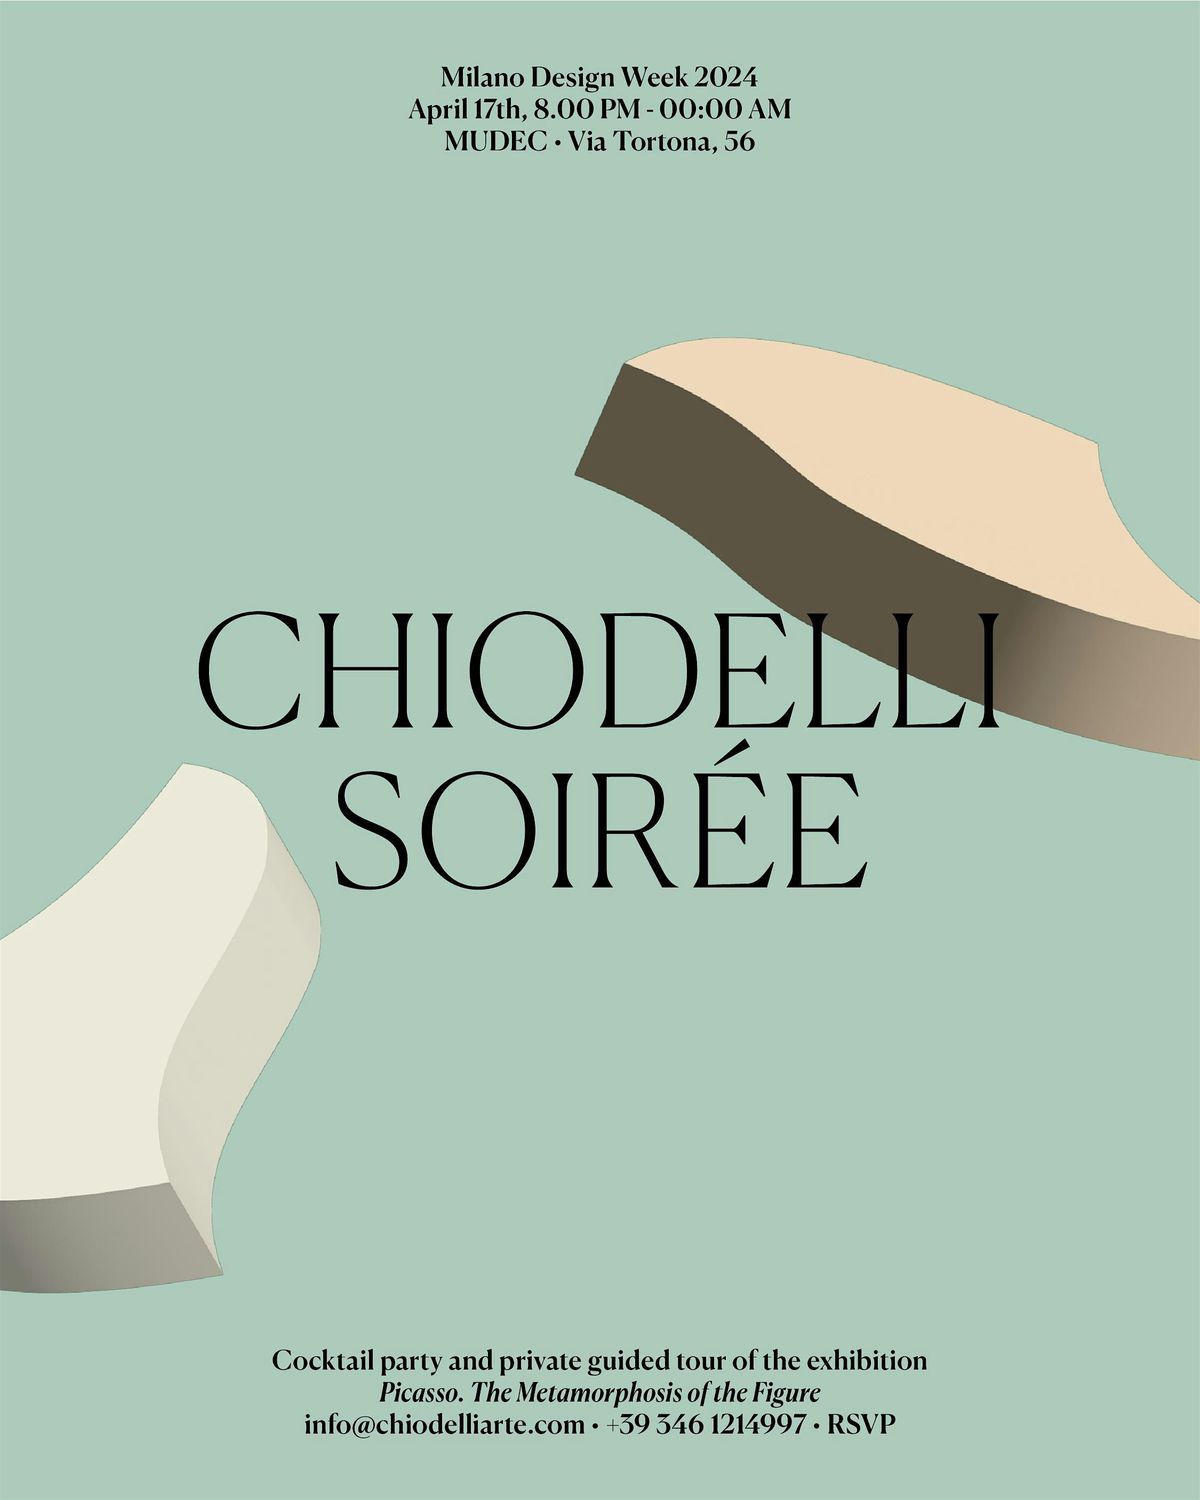 CHIODELLI Soir\u00e9e - Milano Design Week 17 April - MUDEC Via Tortona 56